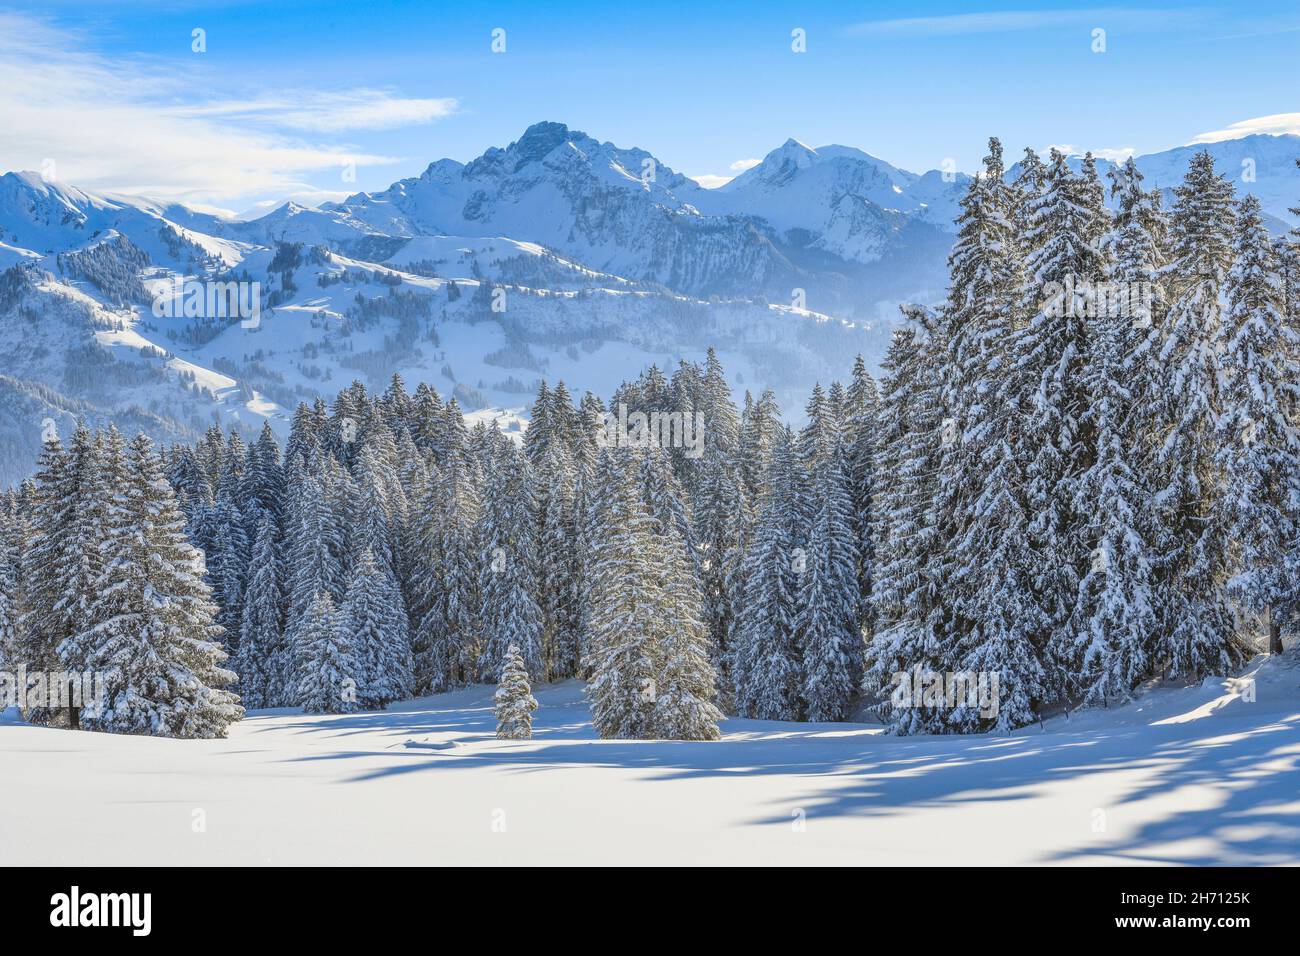 View from the mountain pass Jaunpass in winter. Switzerland Stock Photo